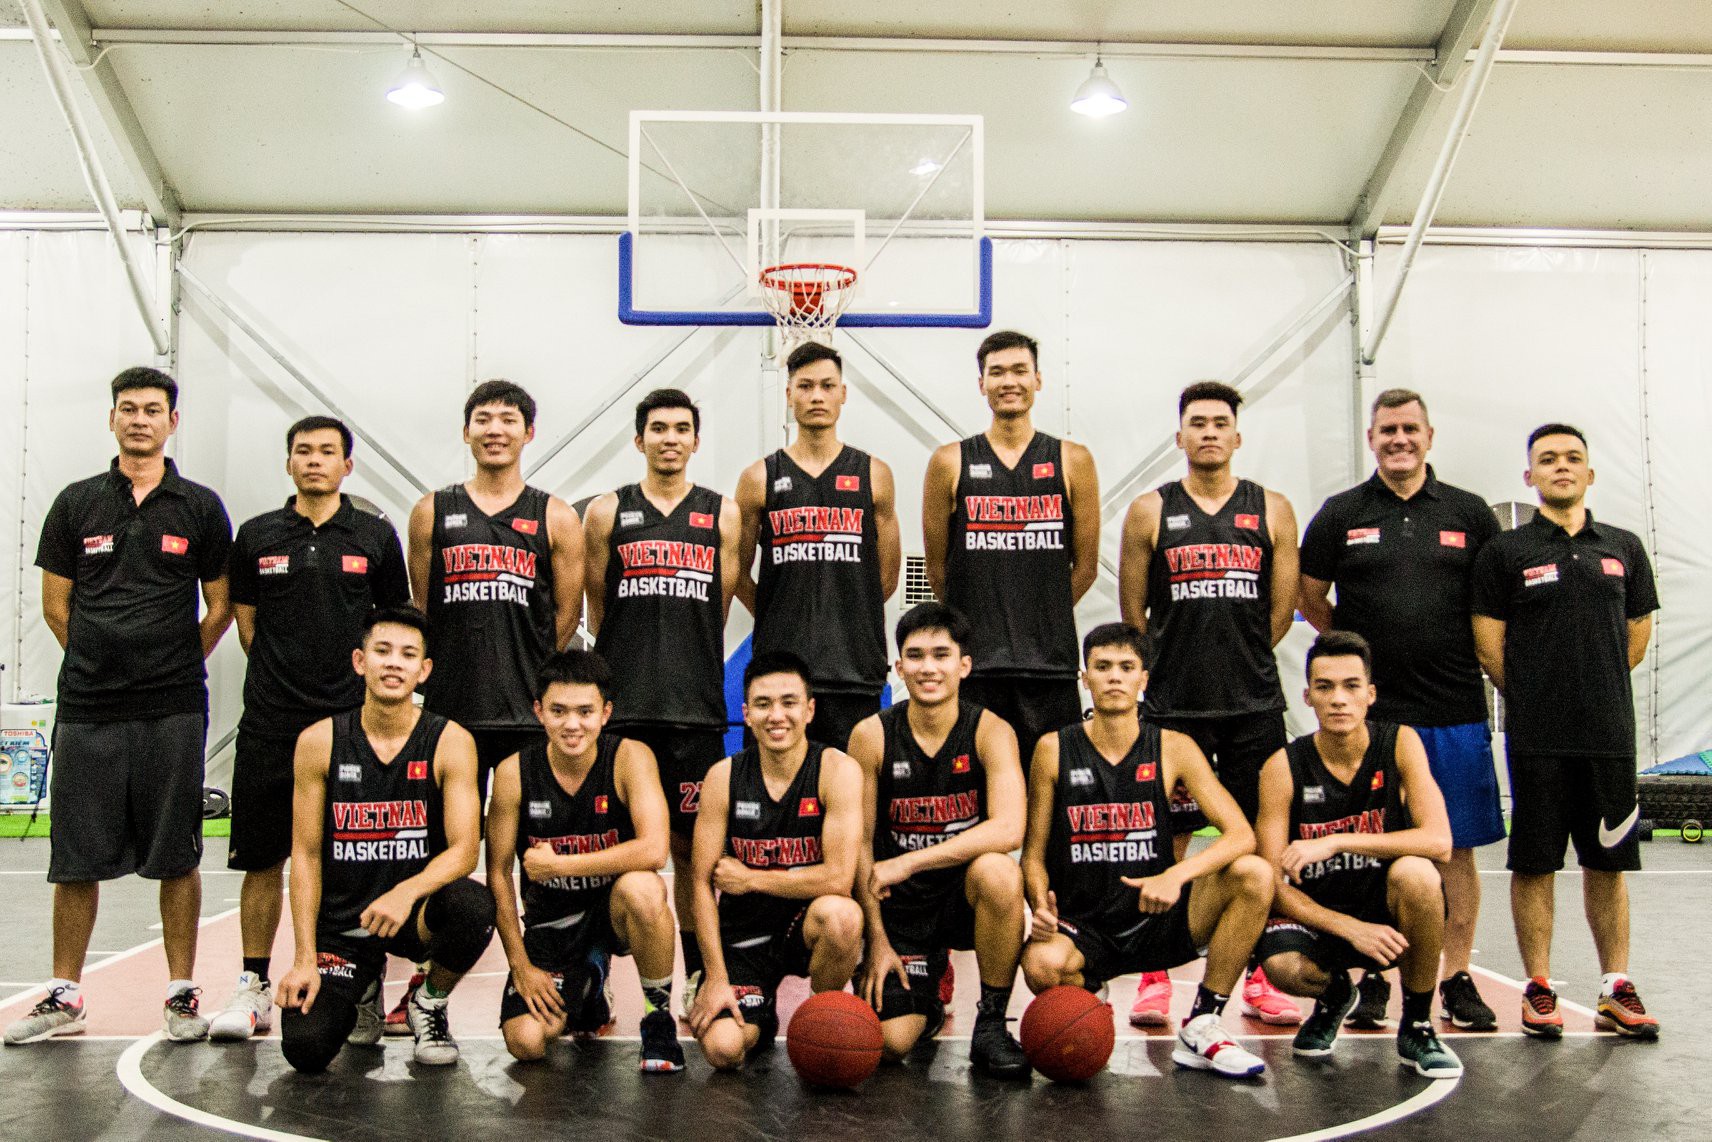 Chốt danh sách 12 cầu thủ U20 sẽ dự giải giao hữu FIBA: Tương lai bóng rổ Việt Nam là đây! - Ảnh 2.